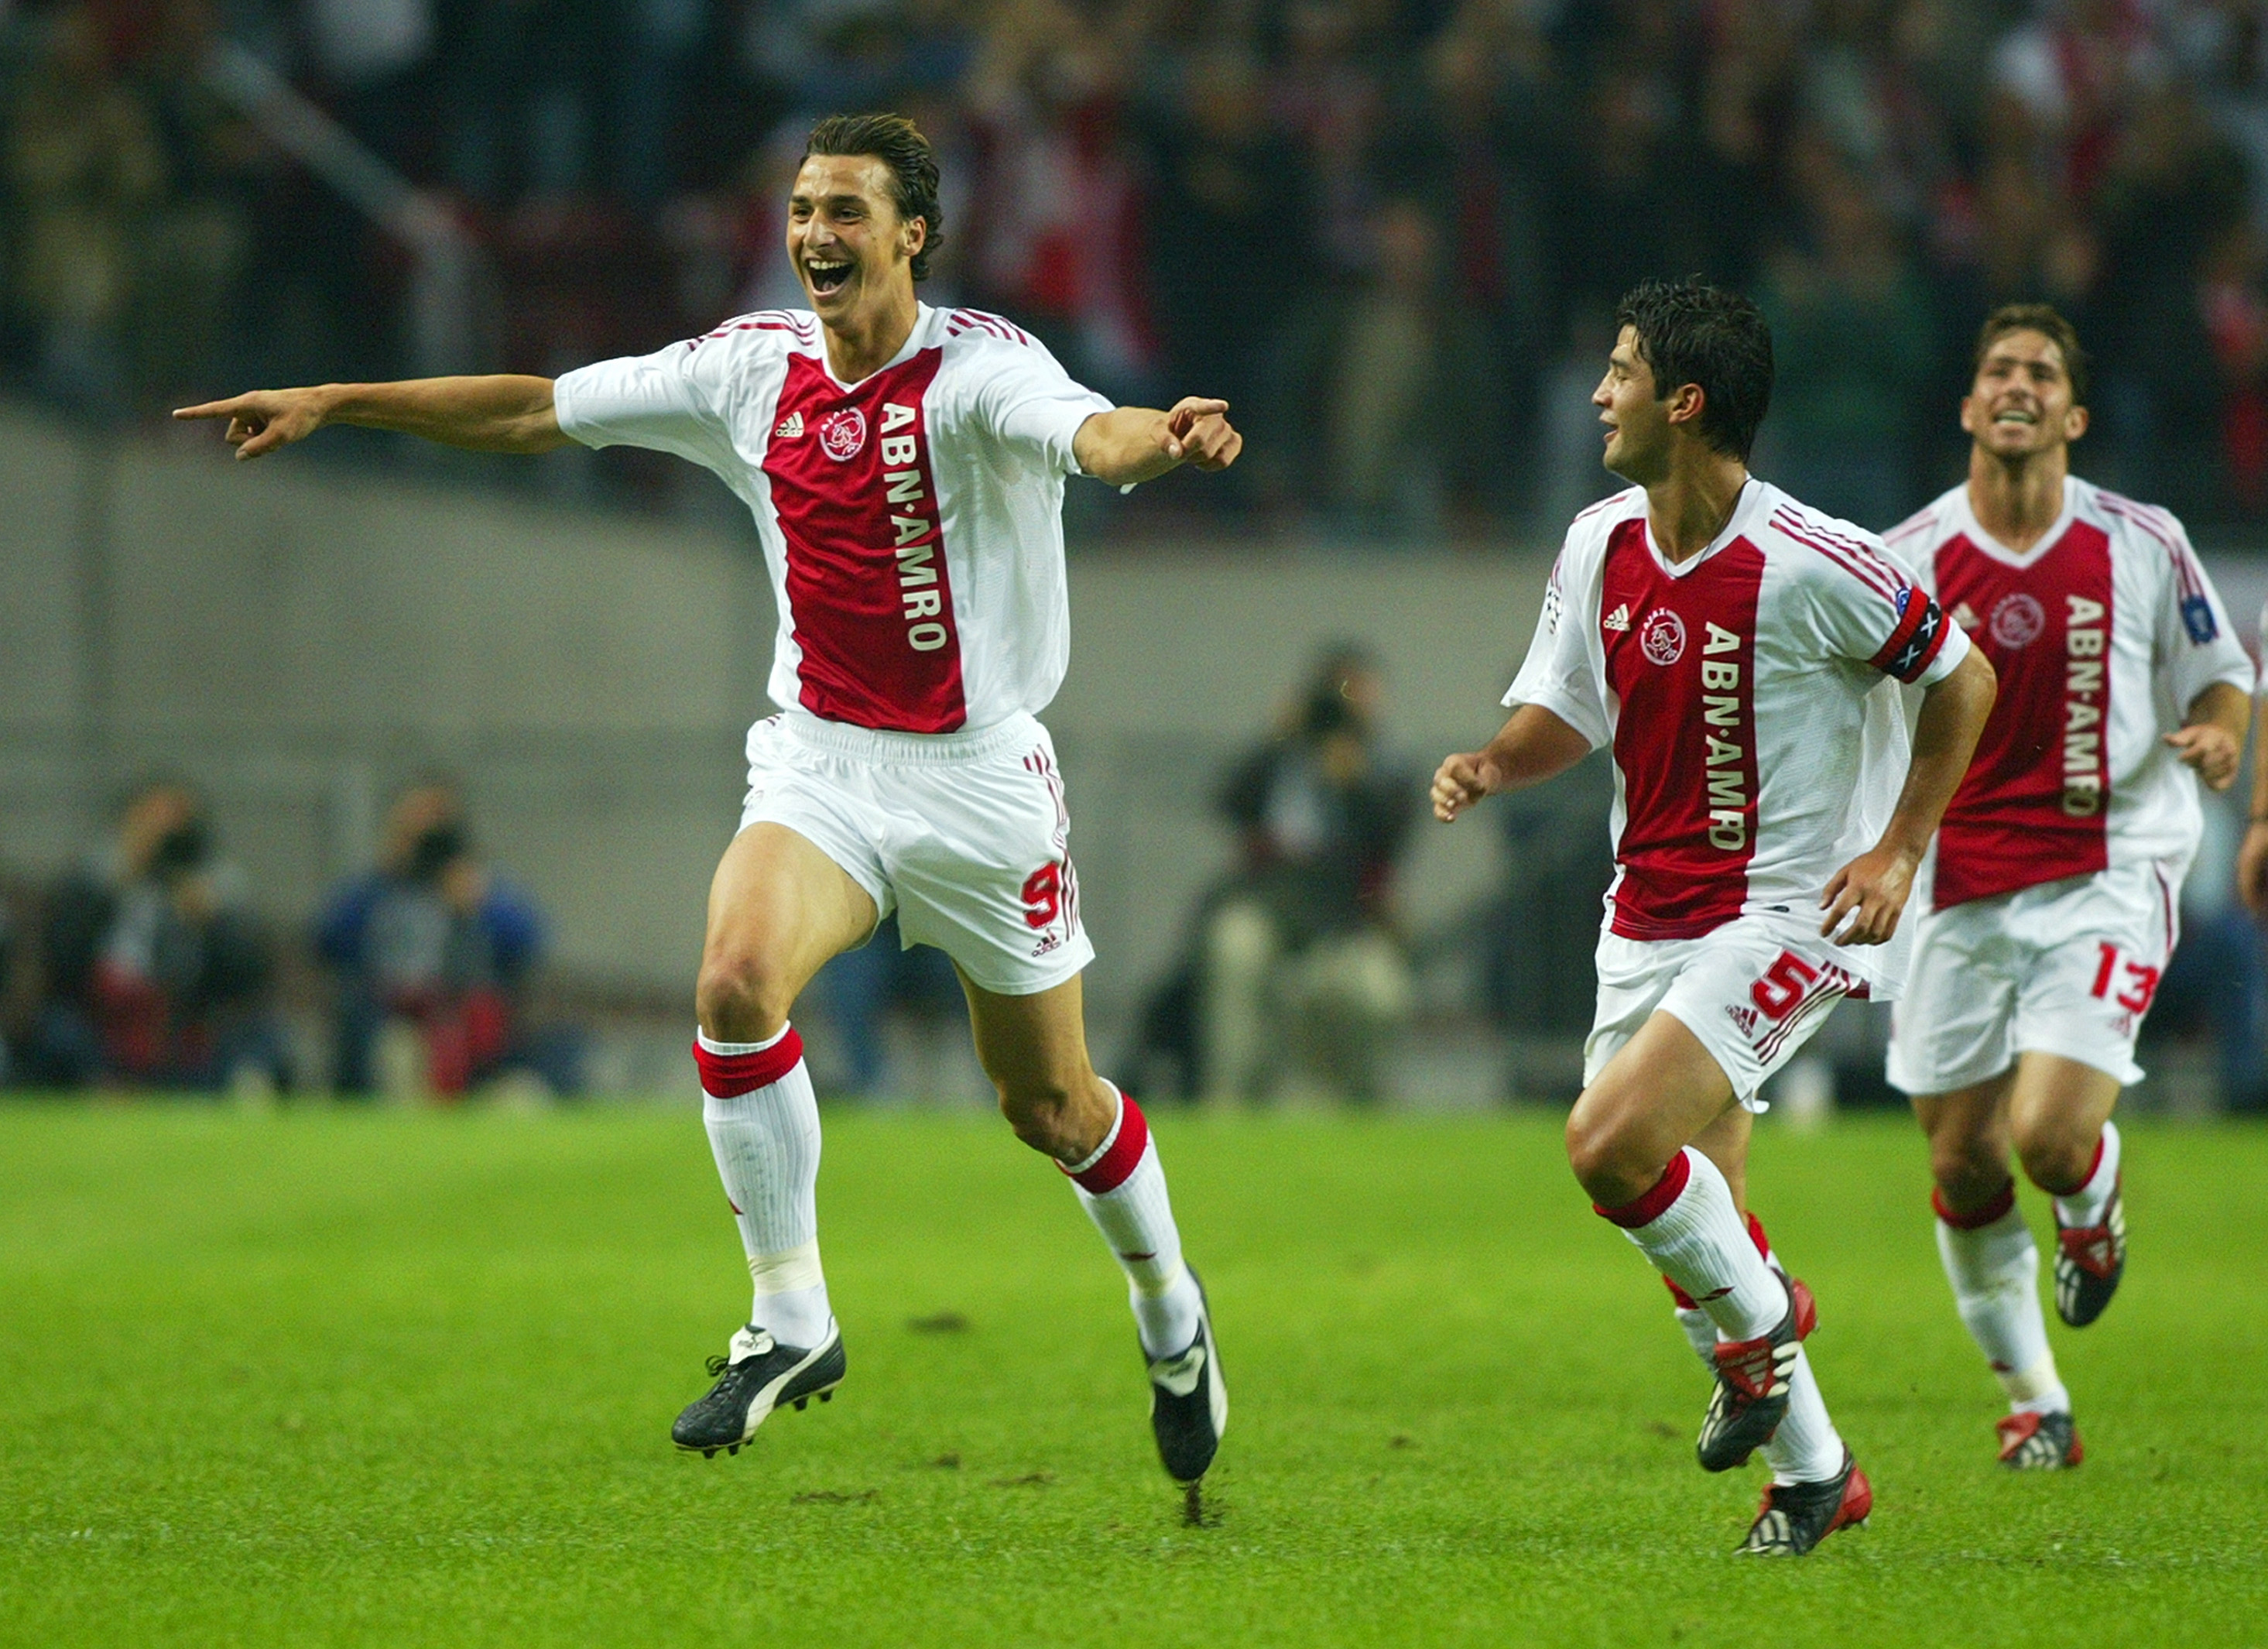 Ajax pungade ut 80 miljoner i lön till svensken under de tre åren i början på milleniumskiftet.